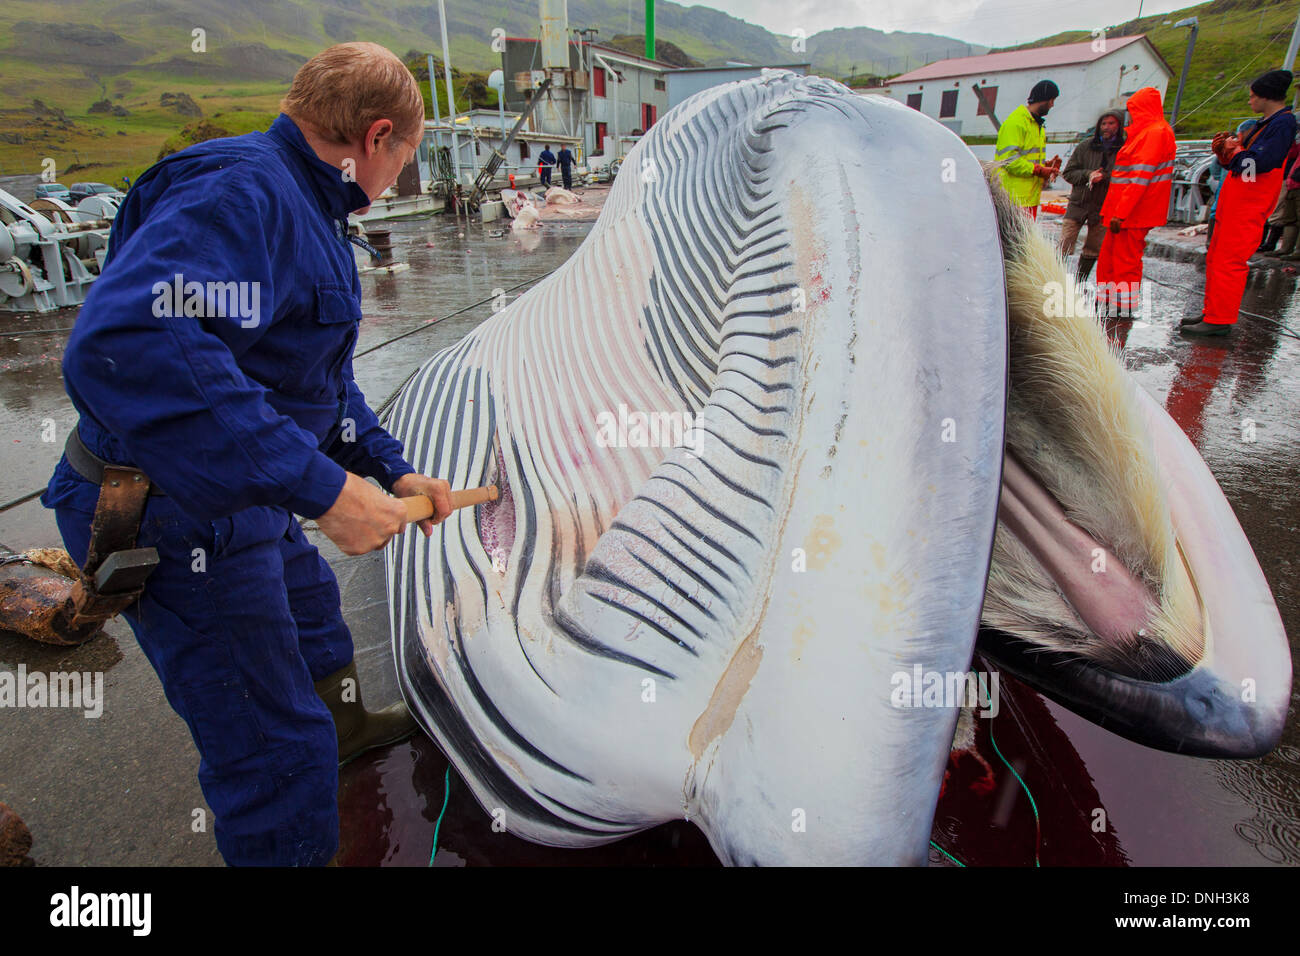 Taglio di una balena FINBACK presso la stazione balneare di HVALFJORDUR, il fiordo di balene, la caccia alla balena in Islanda Islanda occidentale, Europa Foto Stock